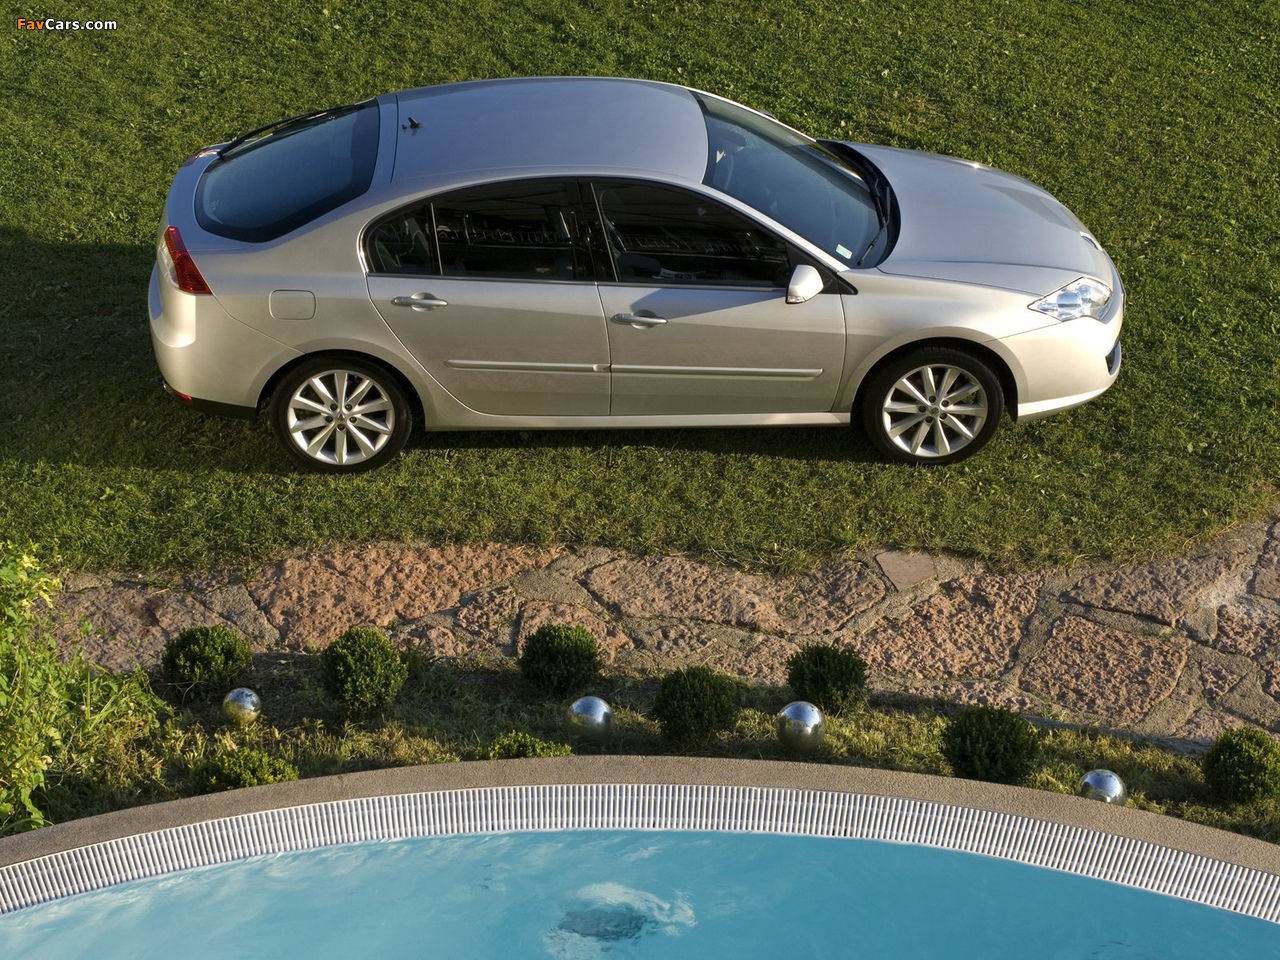 Renault Laguna Hatchback 2007–10 images (1280 x 960)